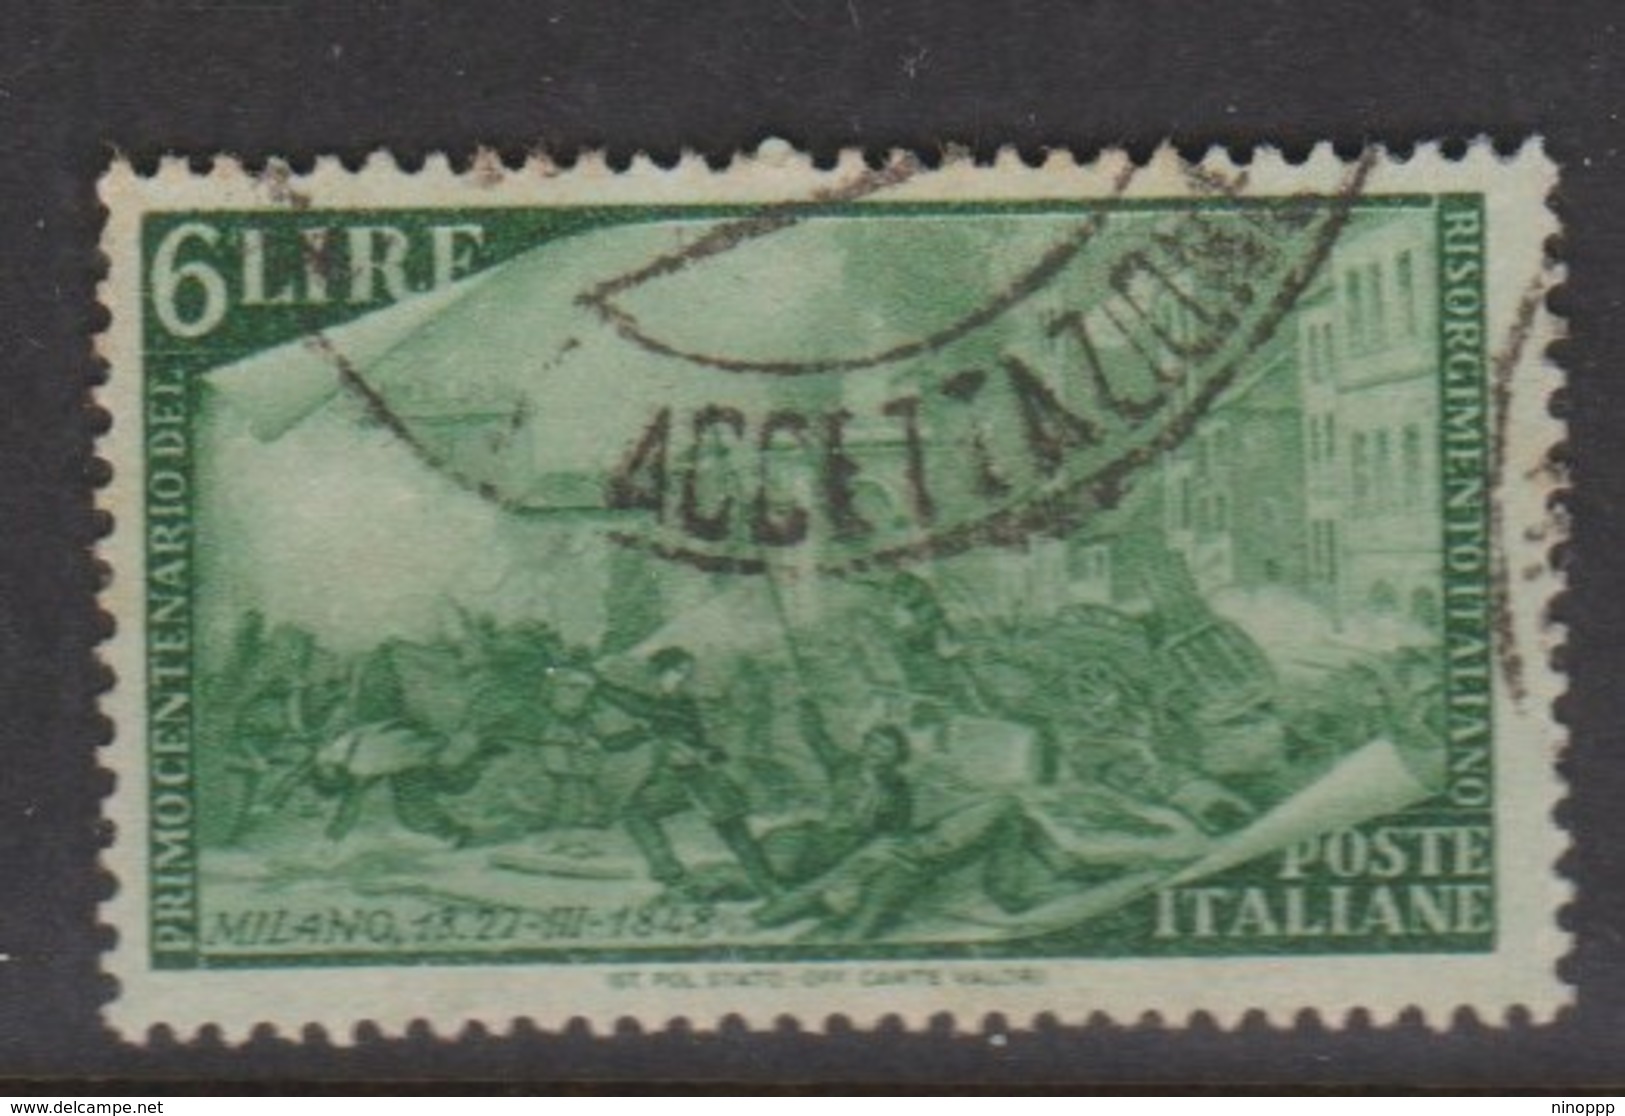 Italy Republic S 583 1948 Centenary Of The Risorgimento,6 Lire Green,used - 1946-60: Used